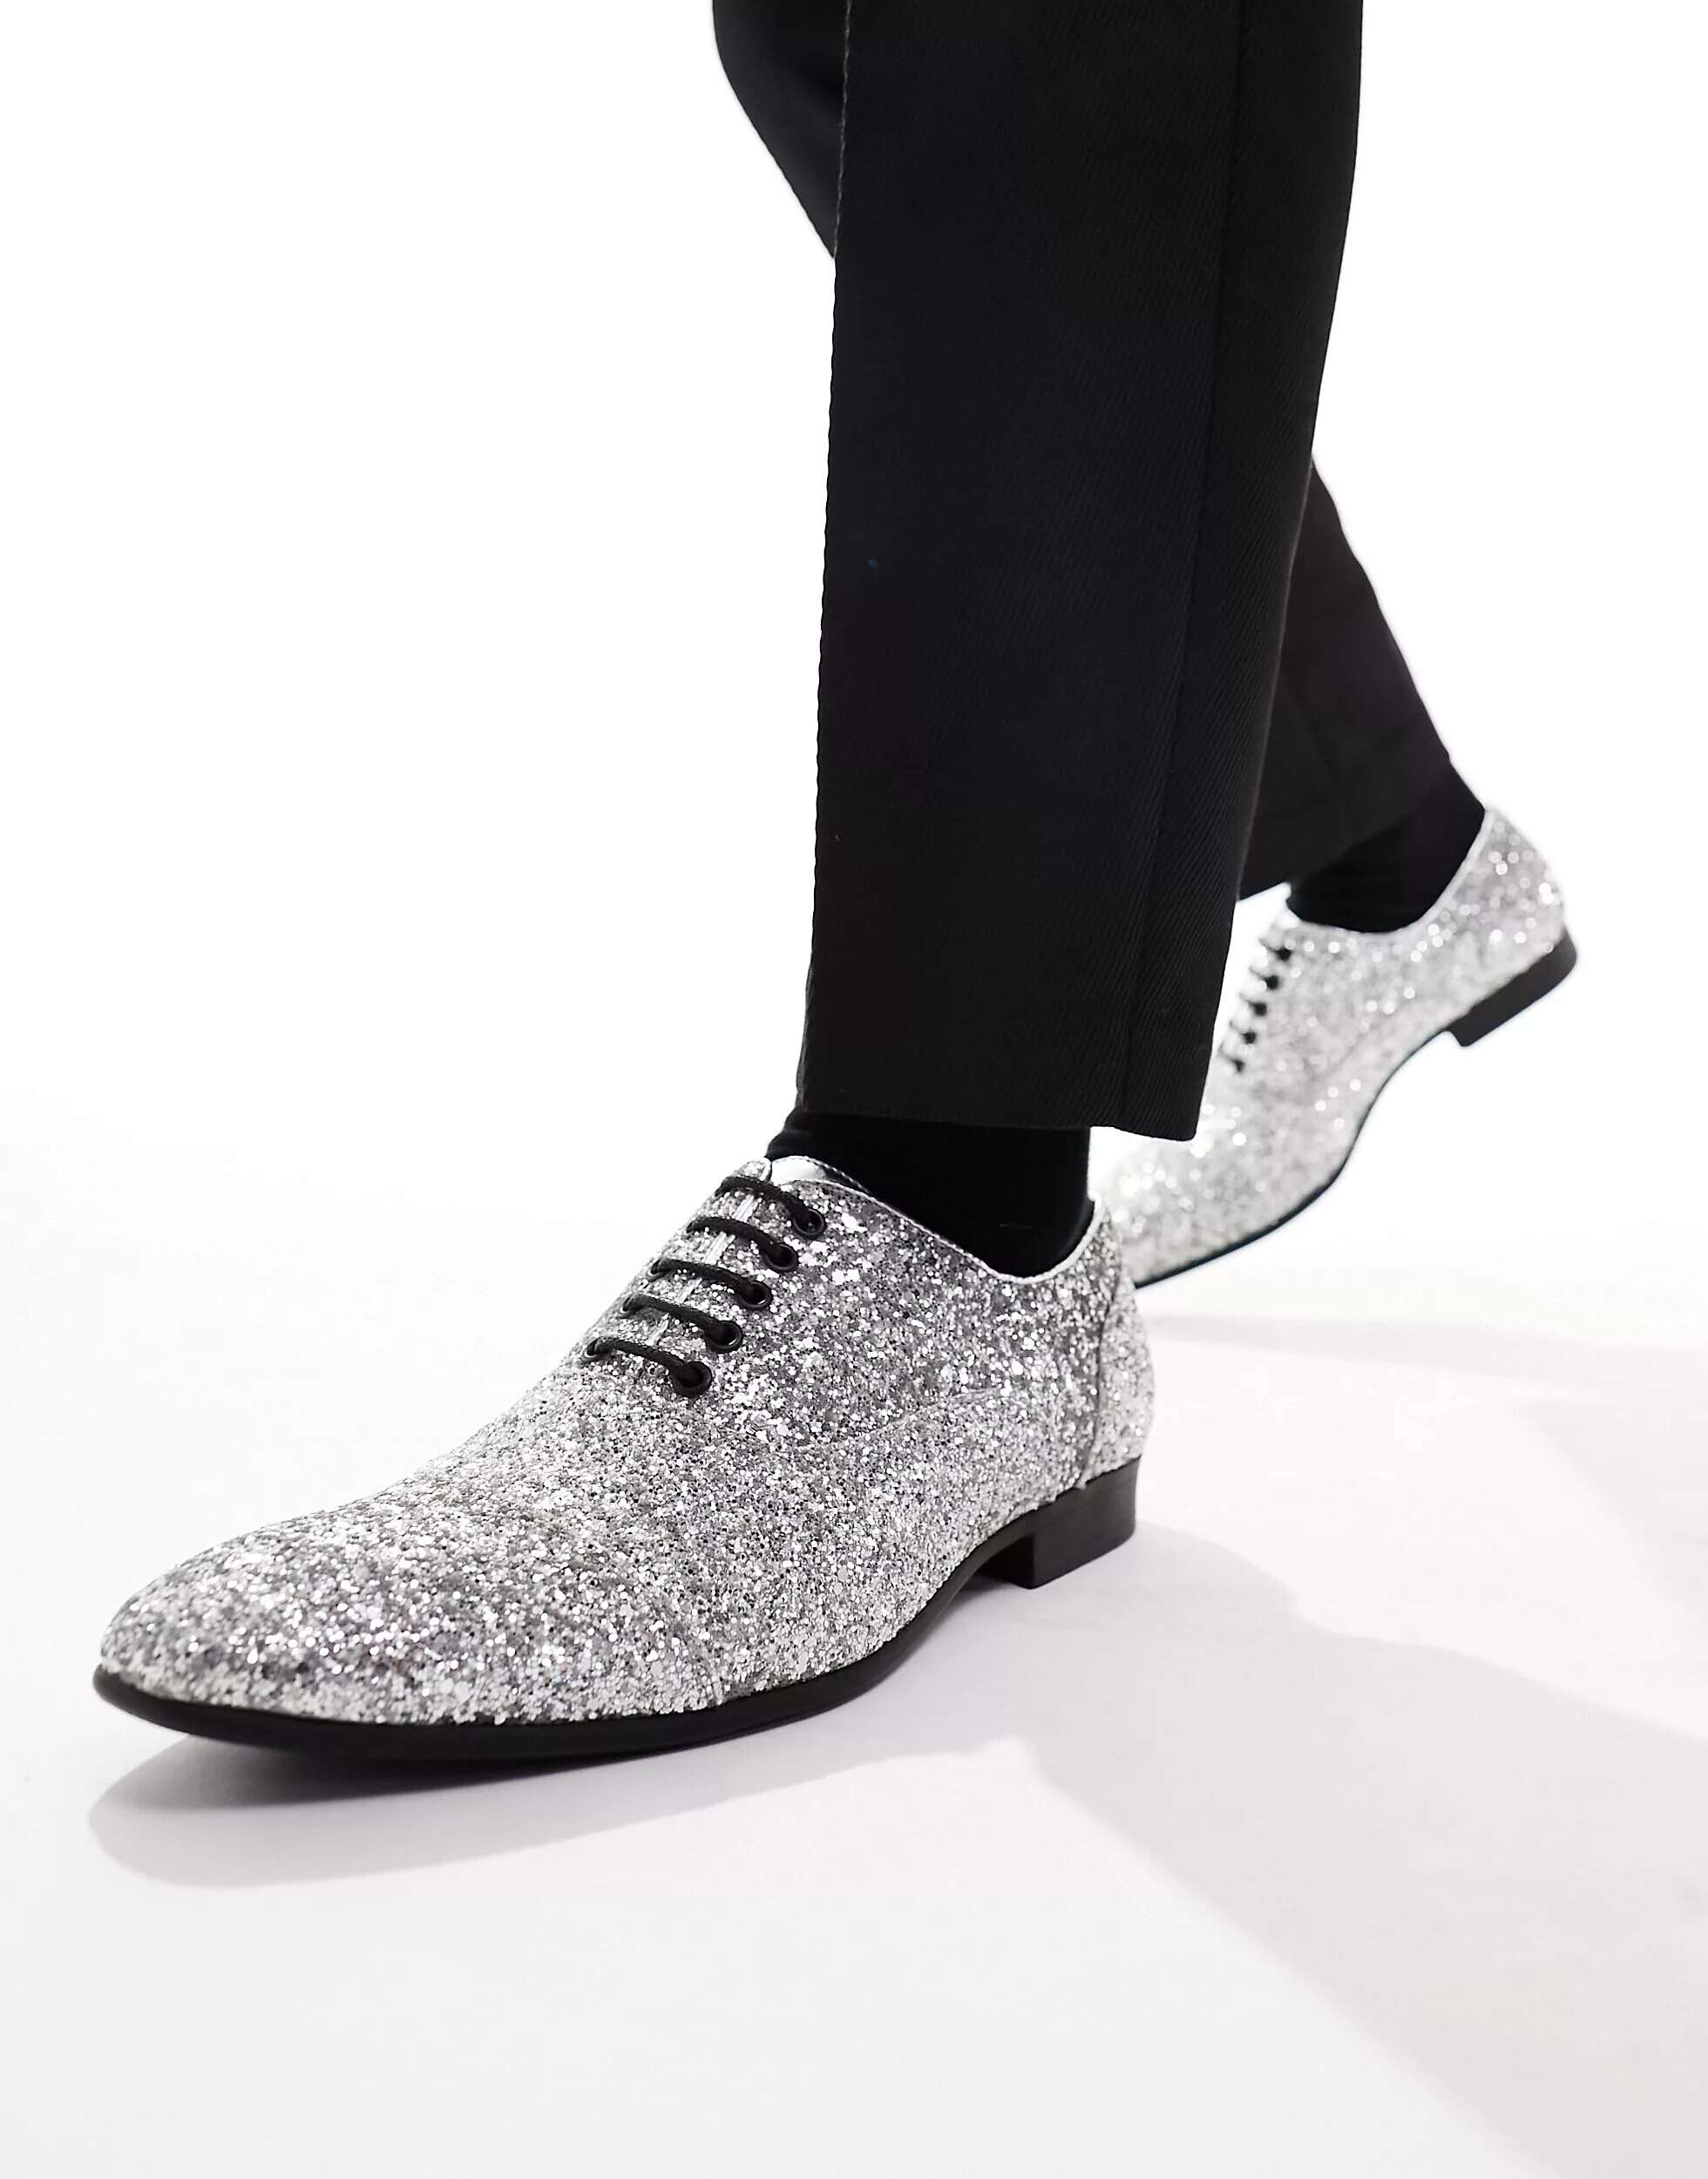 Деловые туфли на шнуровке с серебряными блестками из коллекции Truffle Truffle Collection туфли twinset туфли